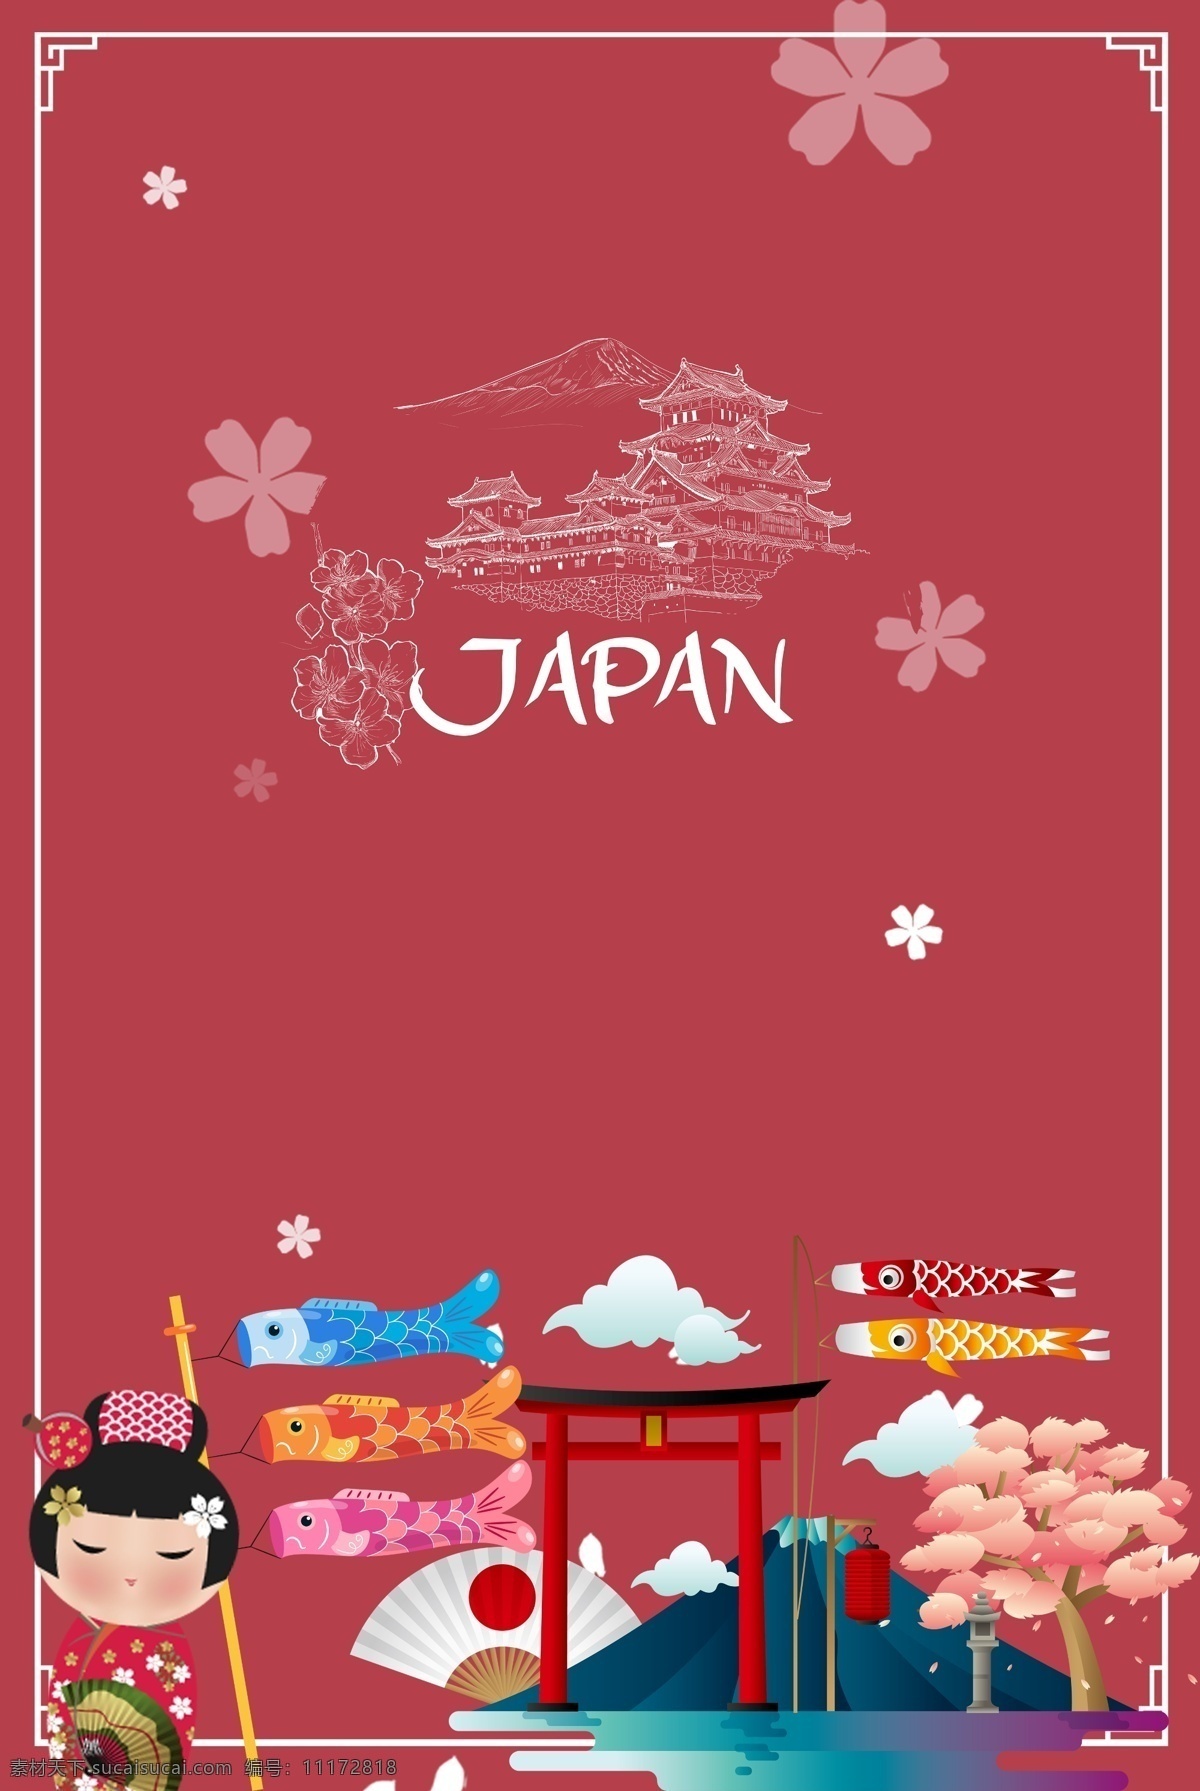 红色 日本旅游 海报 背景 模板 日本背景 日本旅游背景 日本旅游攻略 日本旅游景点 日本旅游路线